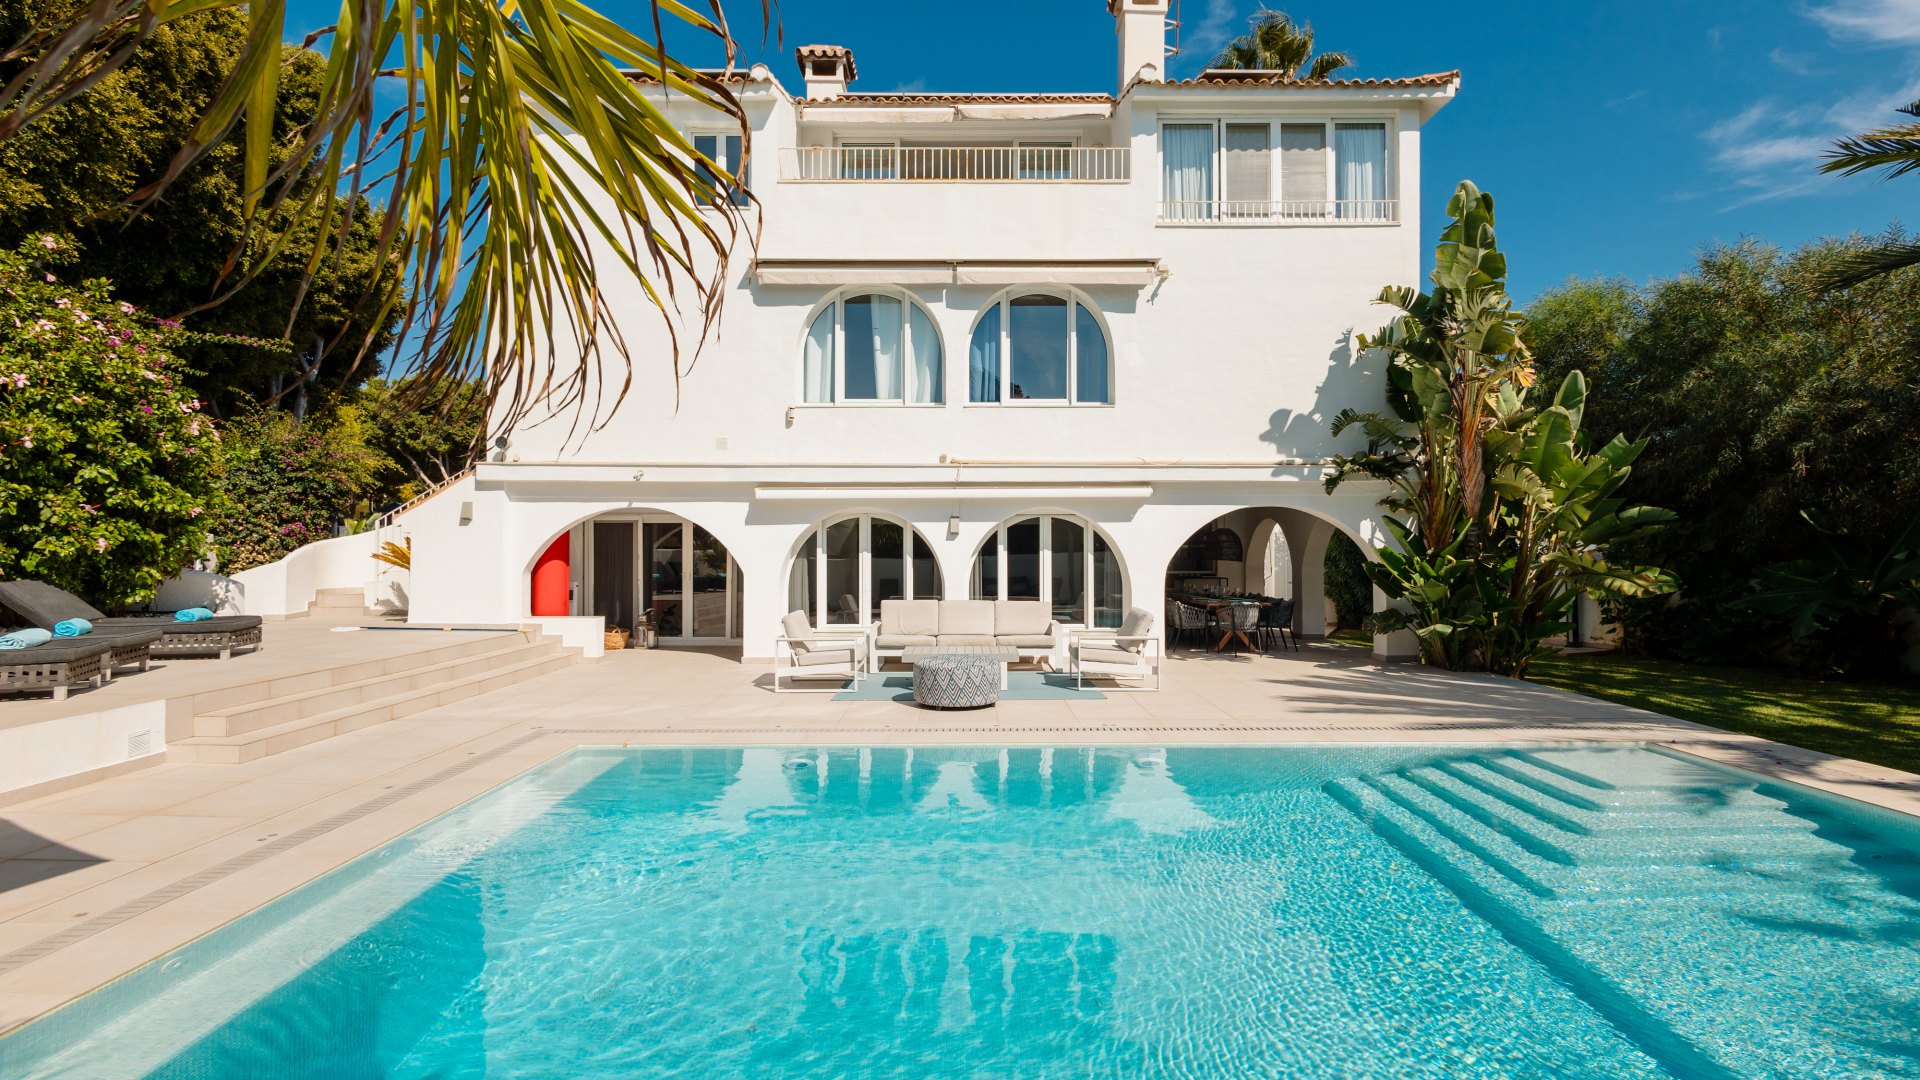 Villa de 6 dormitorios, con piscina climatizada y vistas al mar, al lado de la playa de Costabella